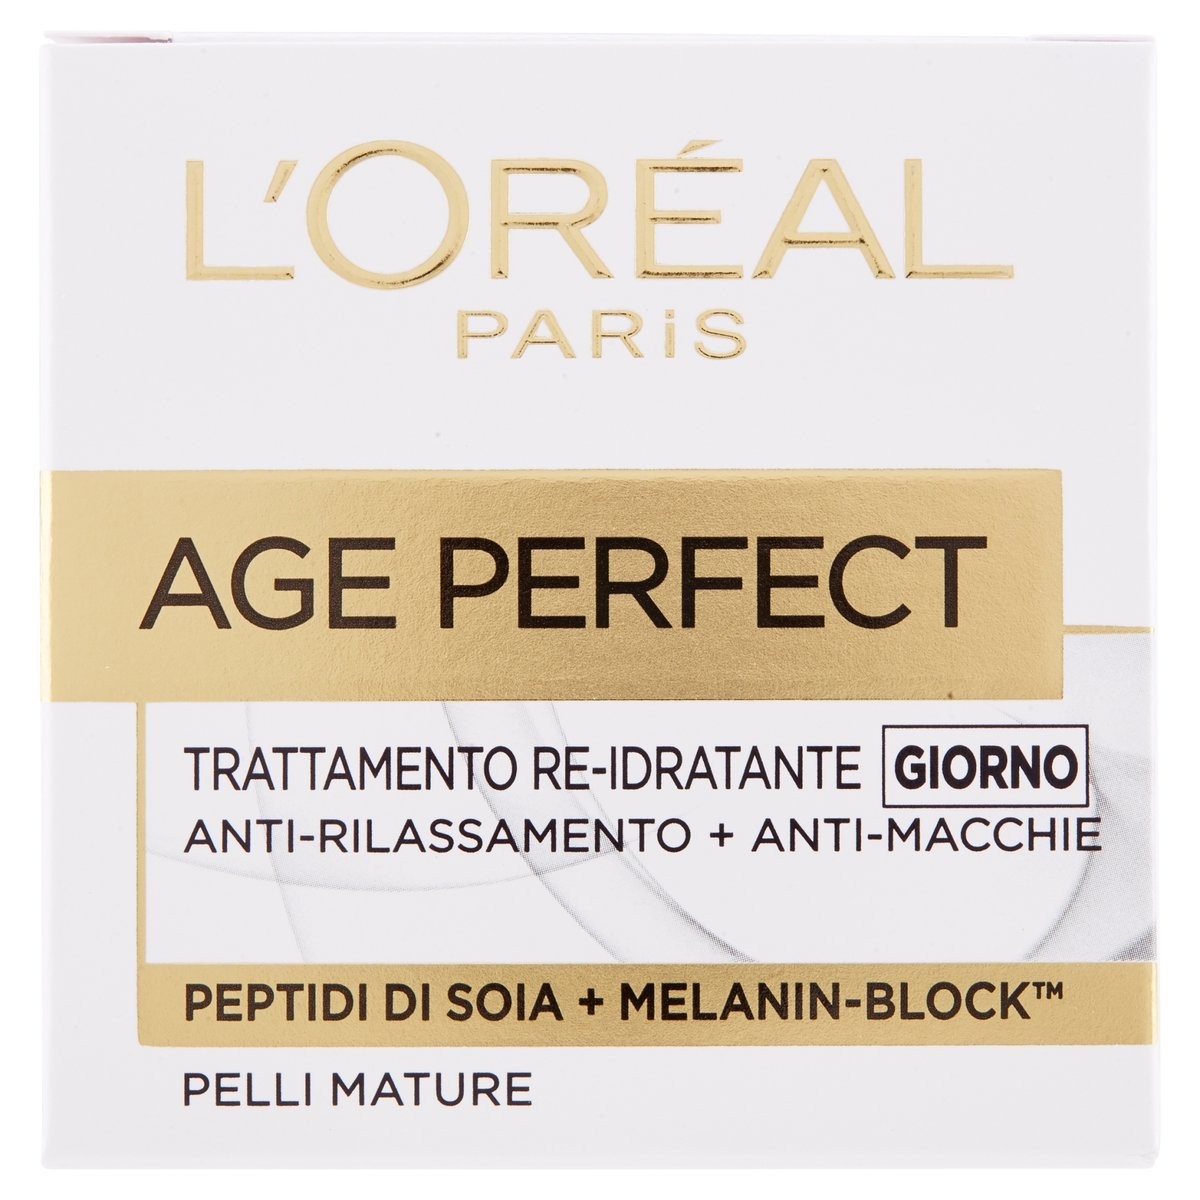 L'Oréal Paris Crema viso Age Perfect Giorno